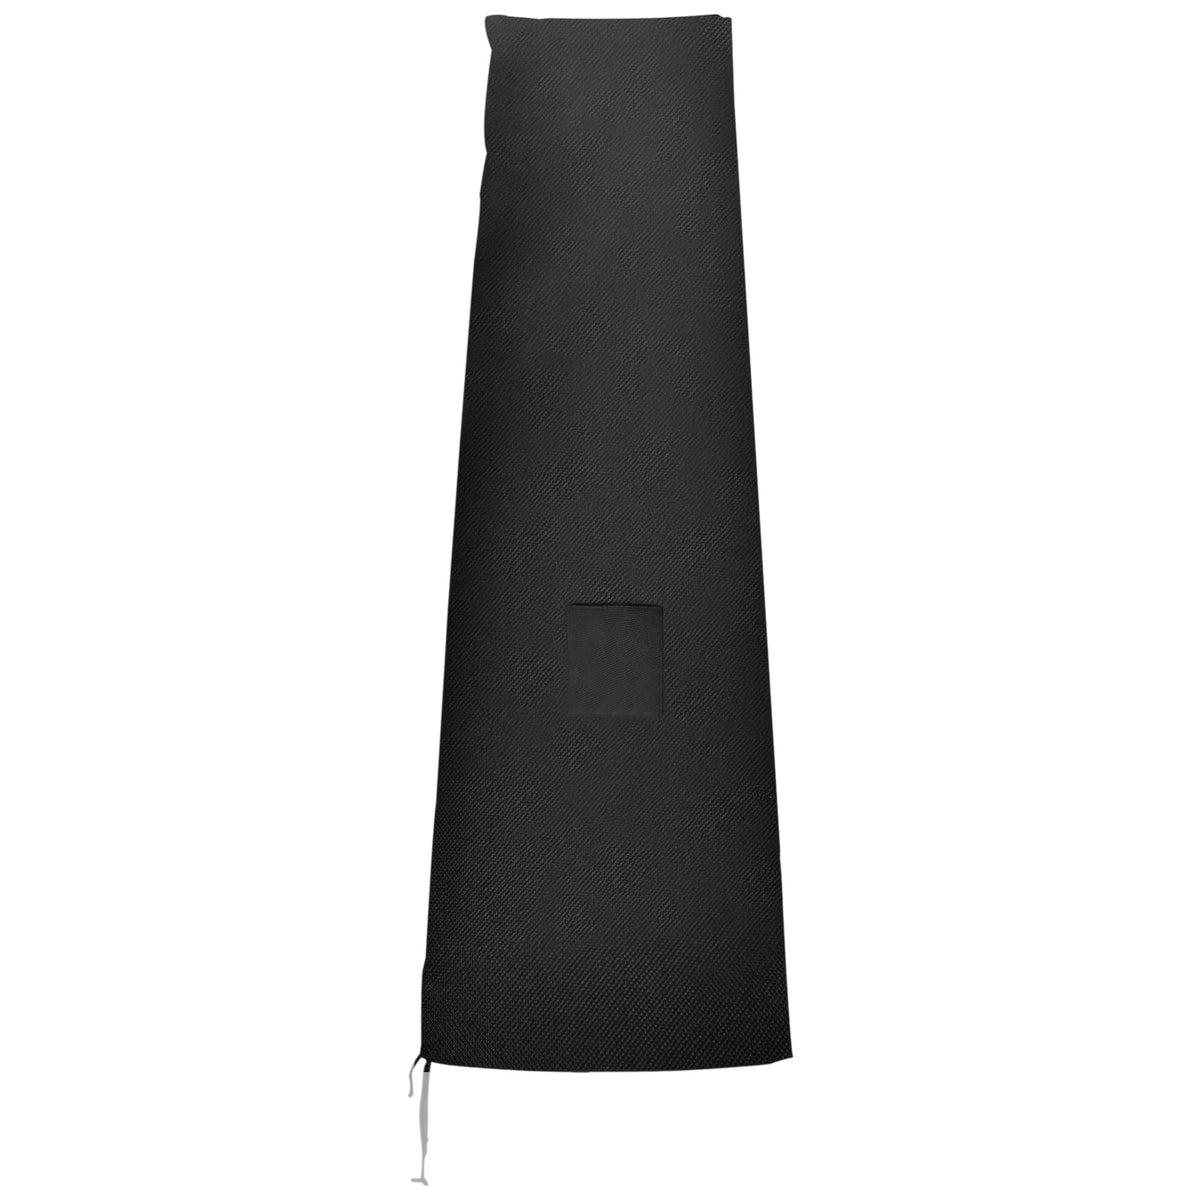 Outsunny Garden Parasol Cover Waterproof Outdoor Cantilever Banana Umbrella Protector 300D Oxford Fabric 200 x 50/80 cm - TovaHaus